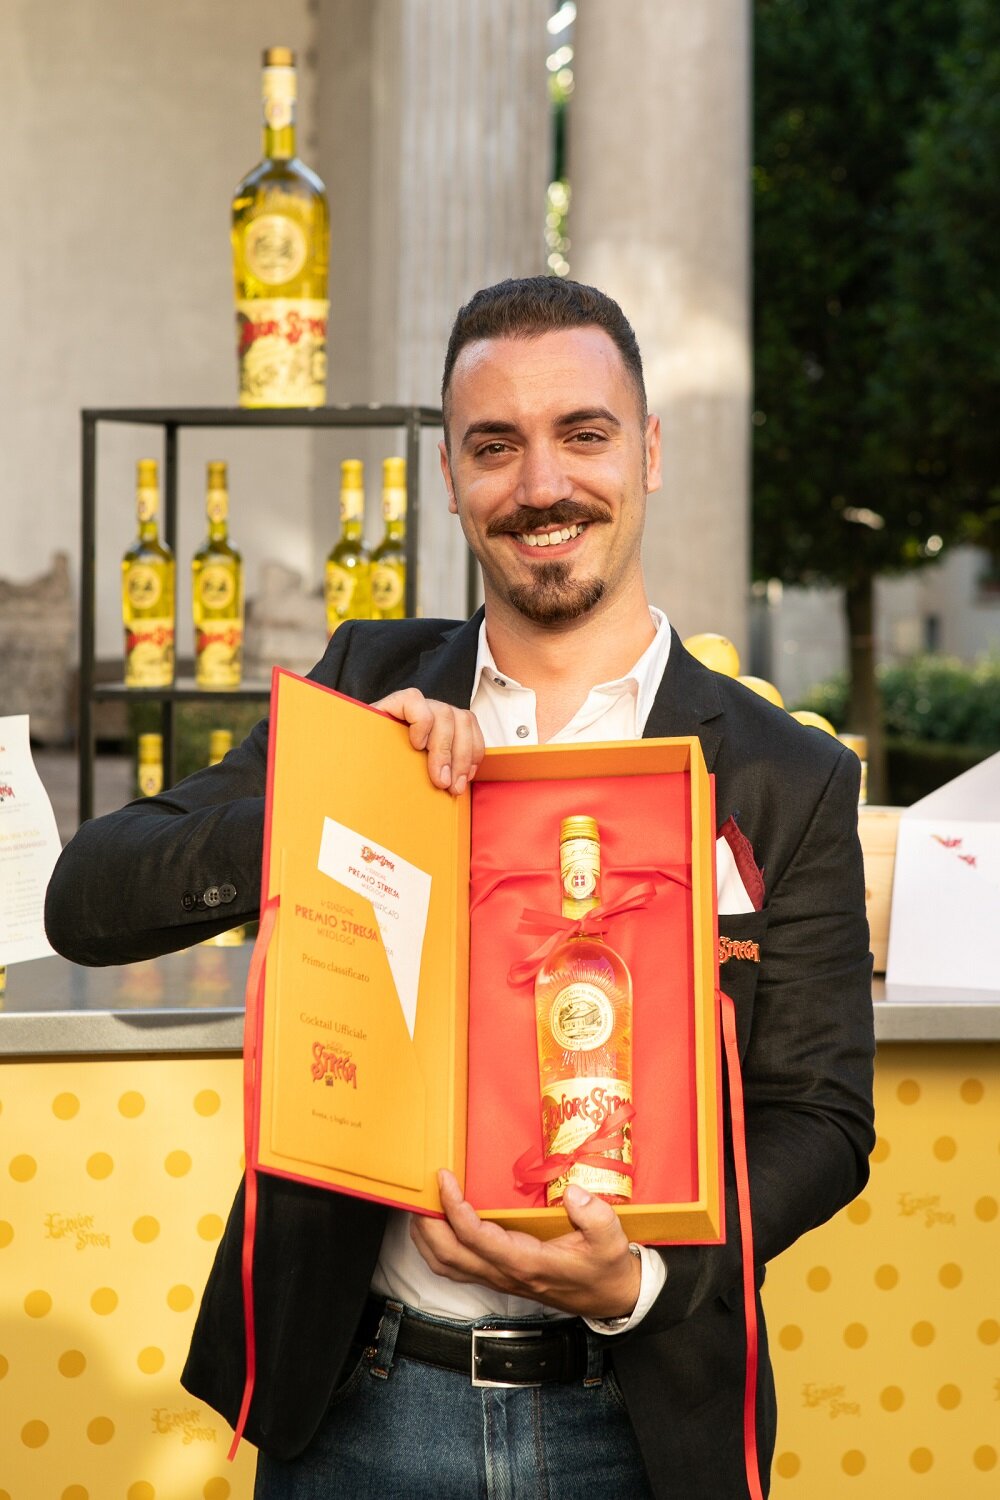 Vince la quarta edizione del Premio Strega Mixology il drink Testa Dura, del barman napoletano Ugo Acampora